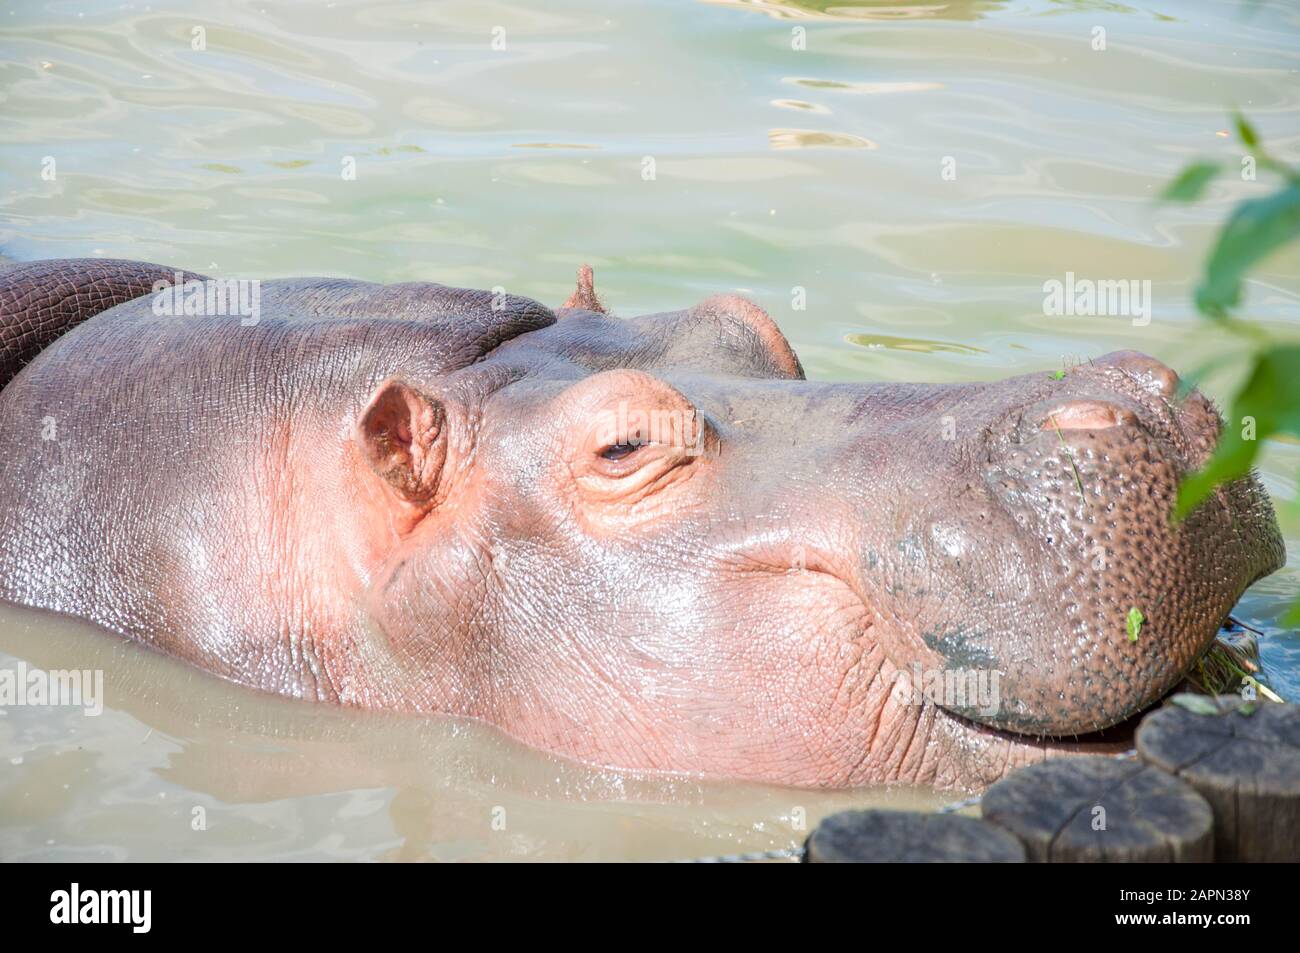 Grande ippopotamo passeggiate sulla terra, dorme, si trova sull'erba e bevande acqua, primo piano Foto Stock